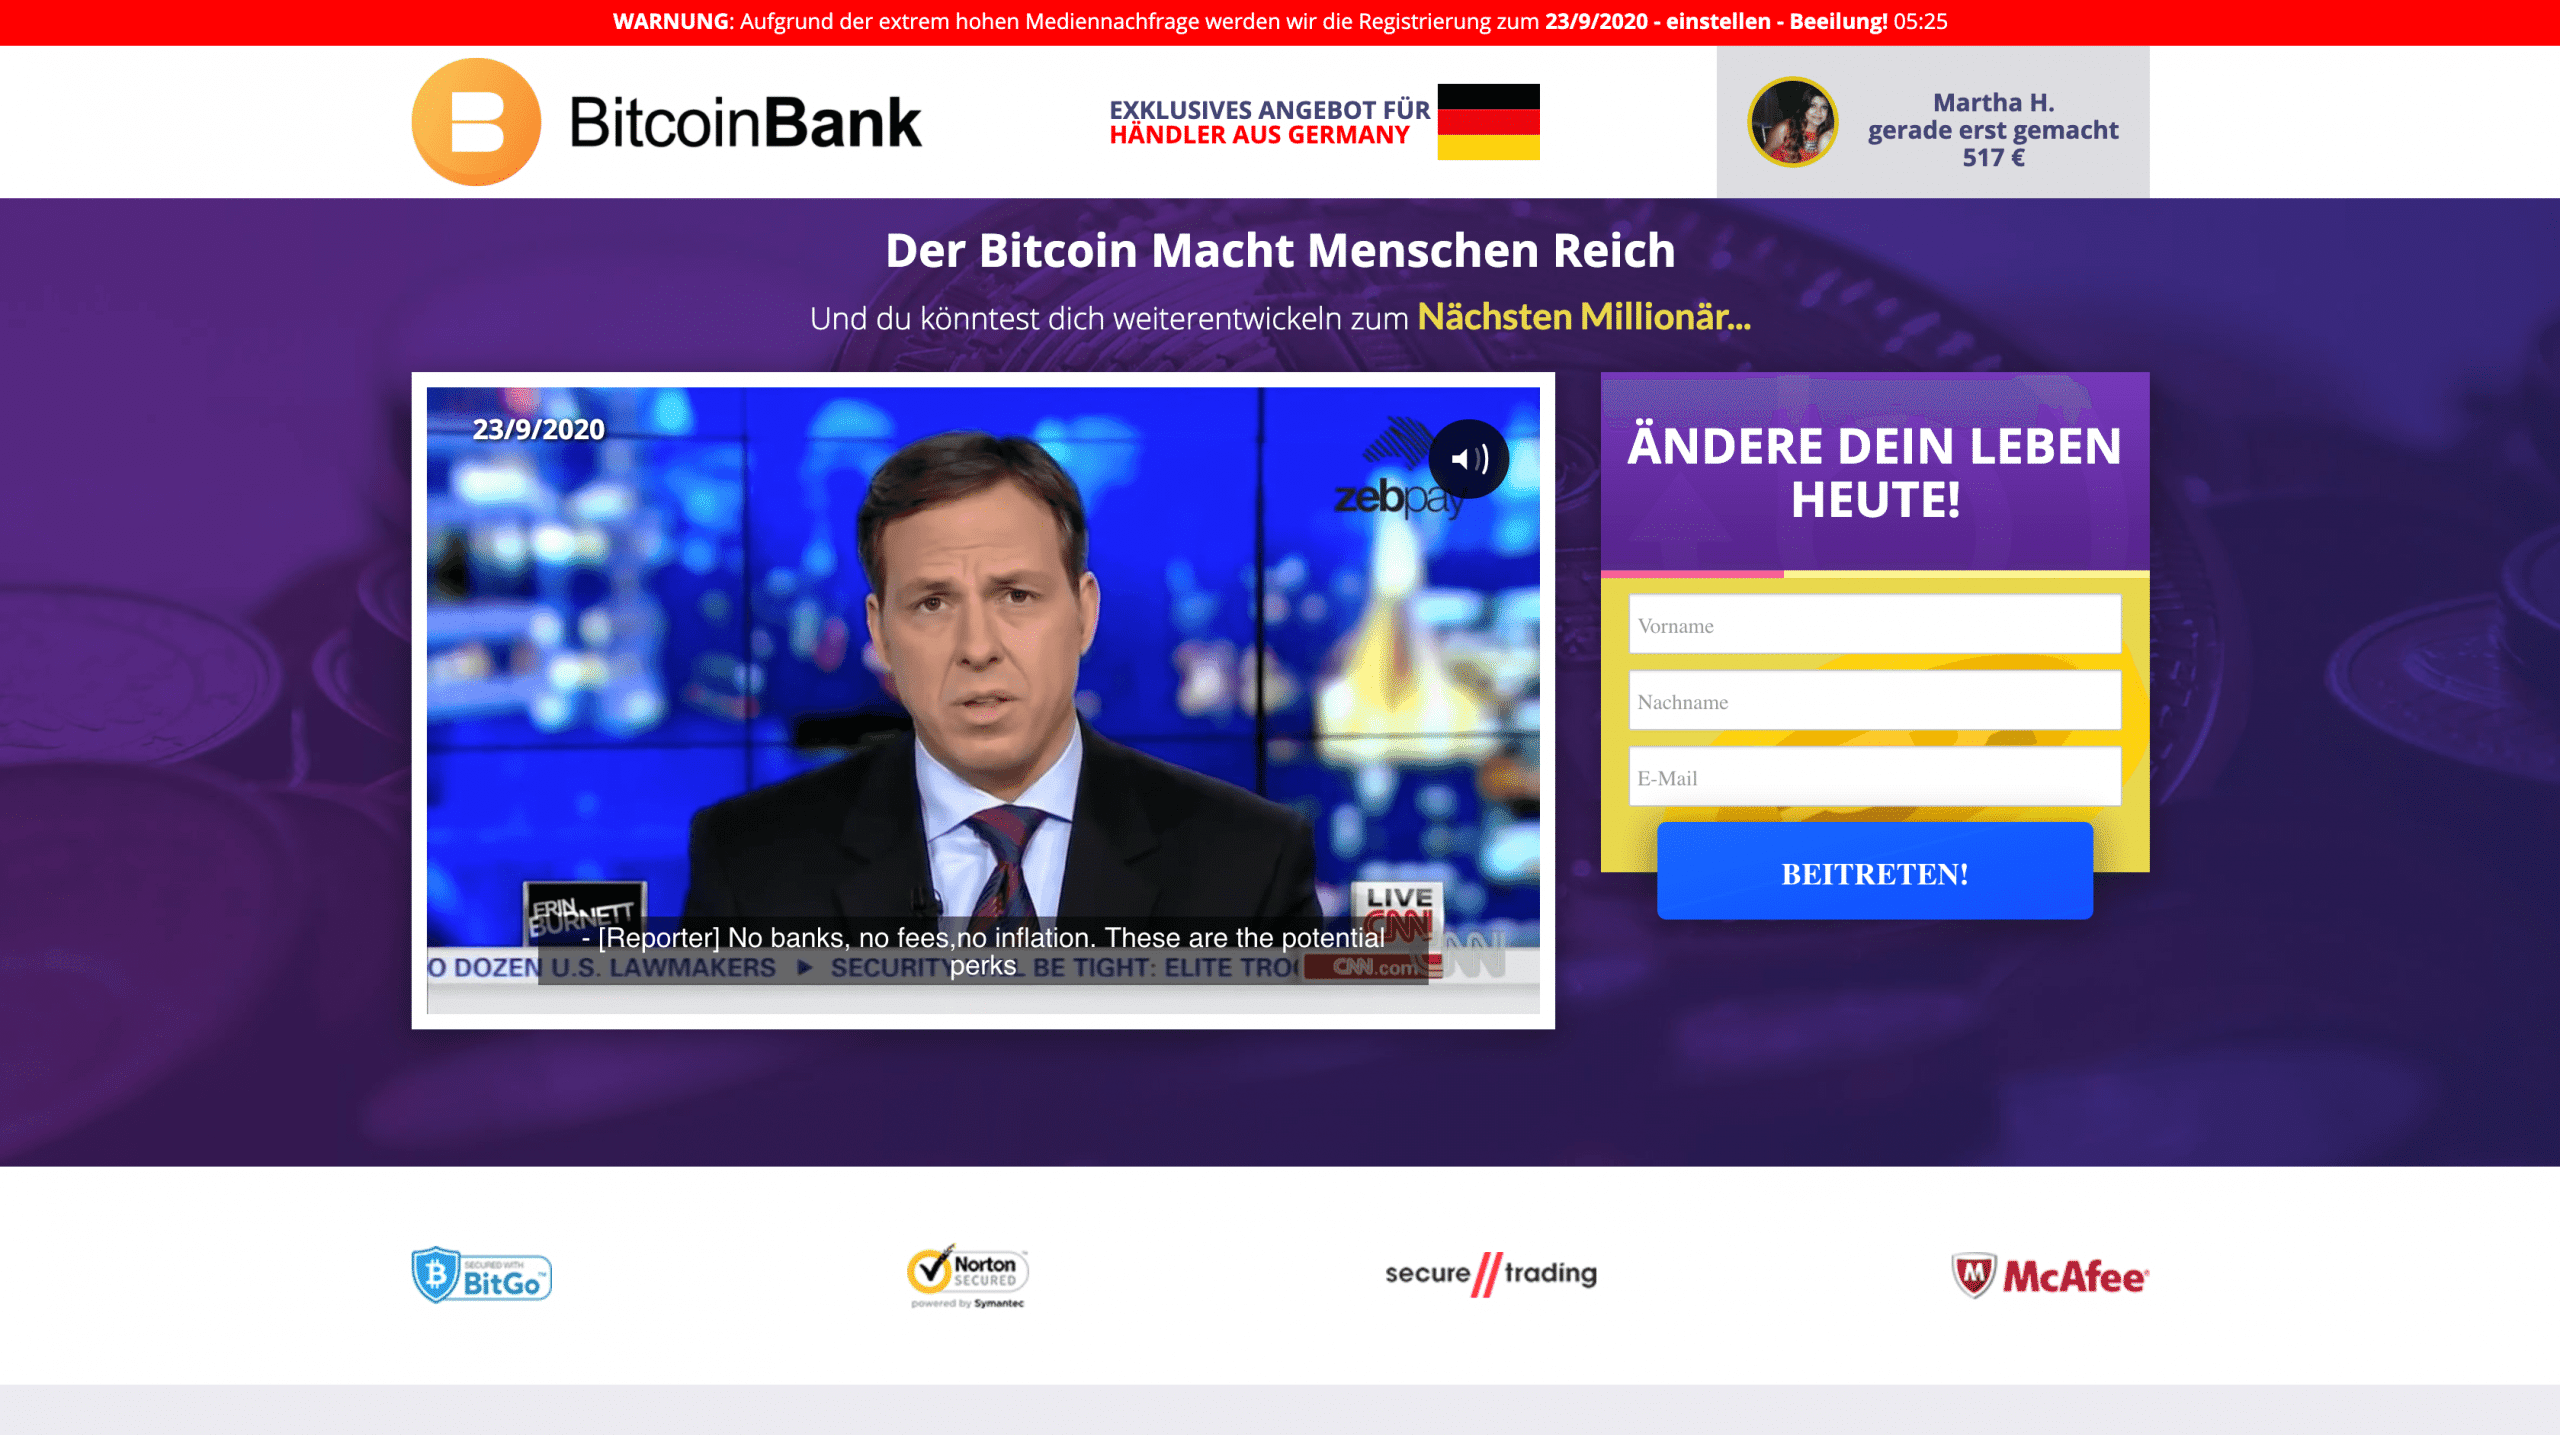 Bitcoin Bank